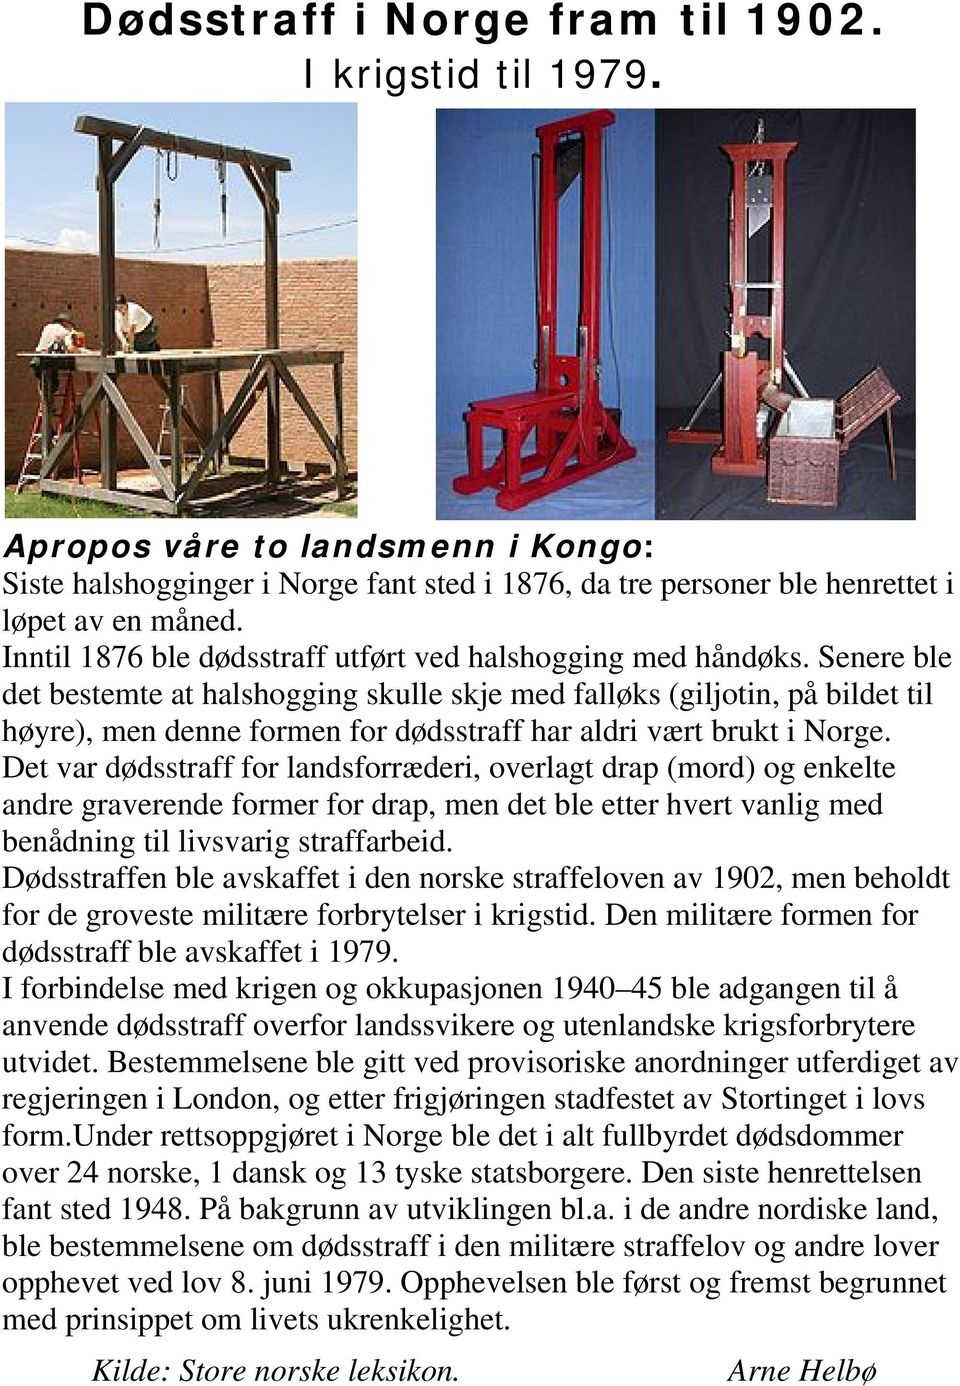 Senere ble det bestemte at halshogging skulle skje med falløks (giljotin, på bildet til høyre), men denne formen for dødsstraff har aldri vært brukt i Norge.